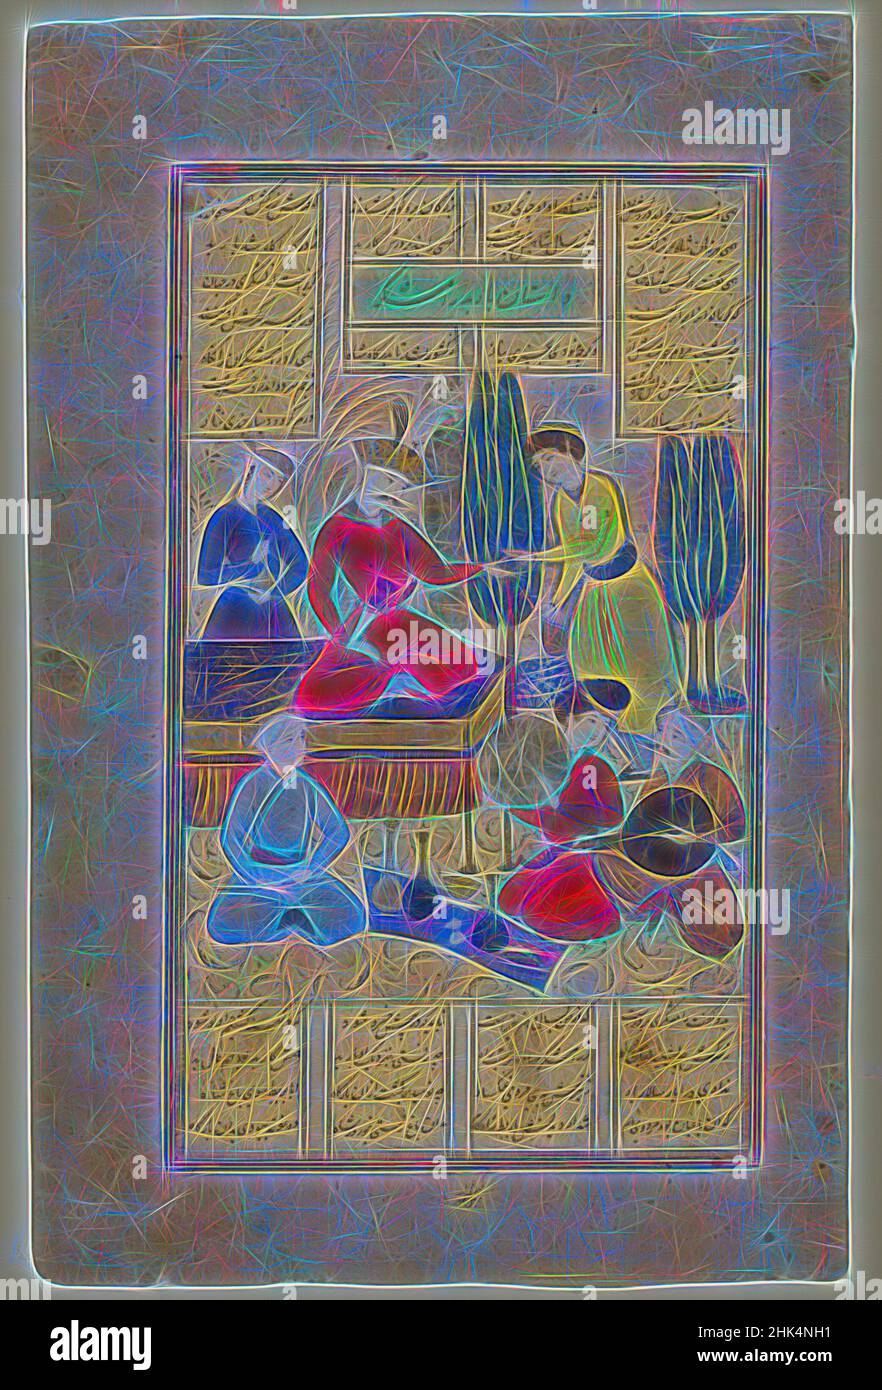 Inspiriert von Bahram Gur und Höflinge unterhalten von Barbad der Musiker, Page aus einem Manuskript des Shahnama von Firdawsi, d. 1020, opake Aquarelle, Tinte und Gold auf Papier., zweite Hälfte 17th Jahrhundert, Safavid, Safavid, Bild: 10 3/4 x 6 5/16 Zoll, 27,3 x 16 cm, Hof, Höflinge, Elite, Tinte, Iran, neu erfunden von Artotop. Klassische Kunst neu erfunden mit einem modernen Twist. Design von warmen fröhlichen Leuchten der Helligkeit und Lichtstrahl Strahlkraft. Fotografie inspiriert von Surrealismus und Futurismus, umarmt dynamische Energie der modernen Technologie, Bewegung, Geschwindigkeit und Kultur zu revolutionieren Stockfoto